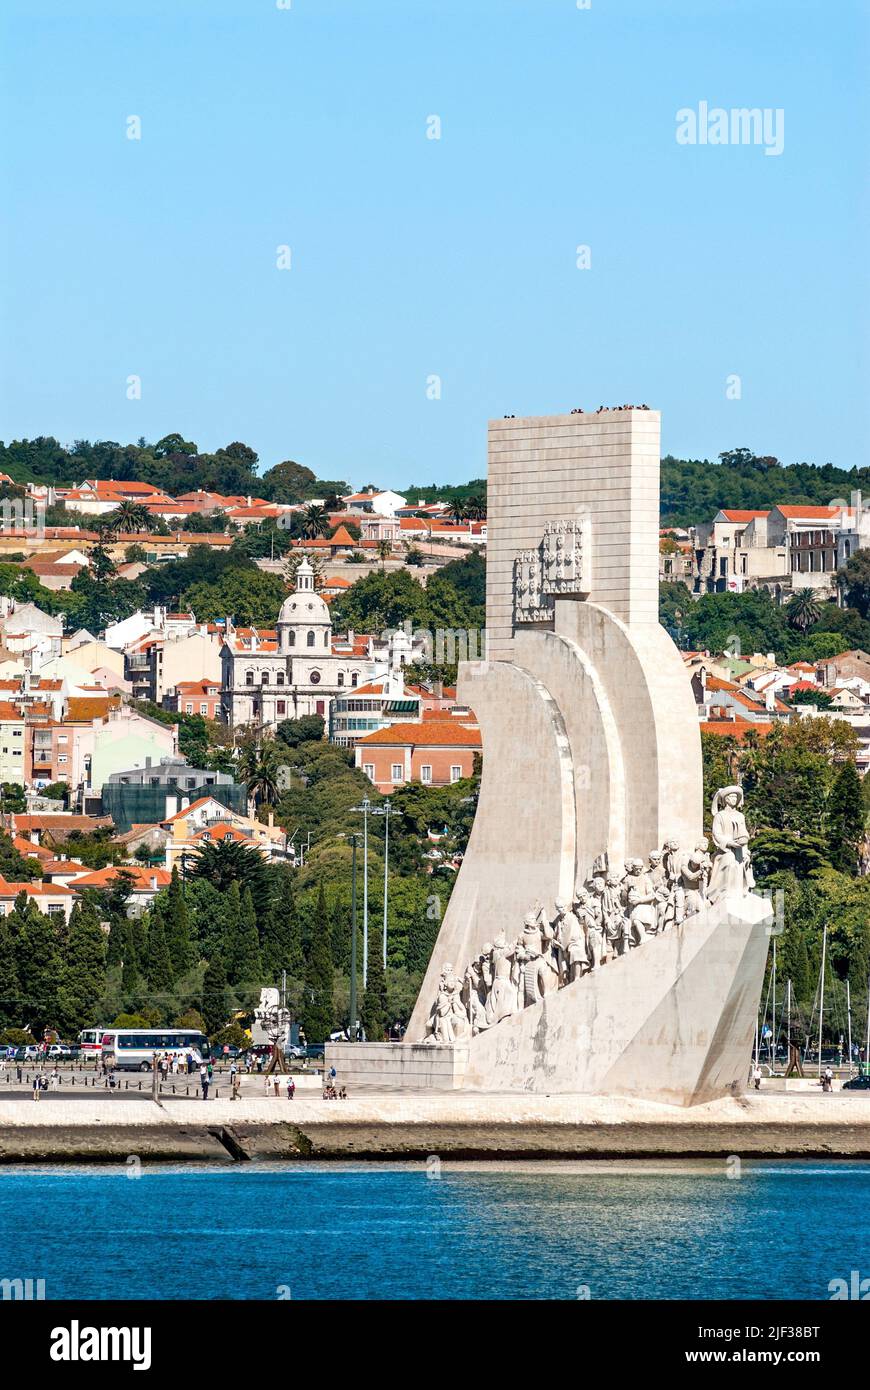 Padrao dos Descobrimentos am Fluss Tejo, Portugal, Lissabon Stockfoto